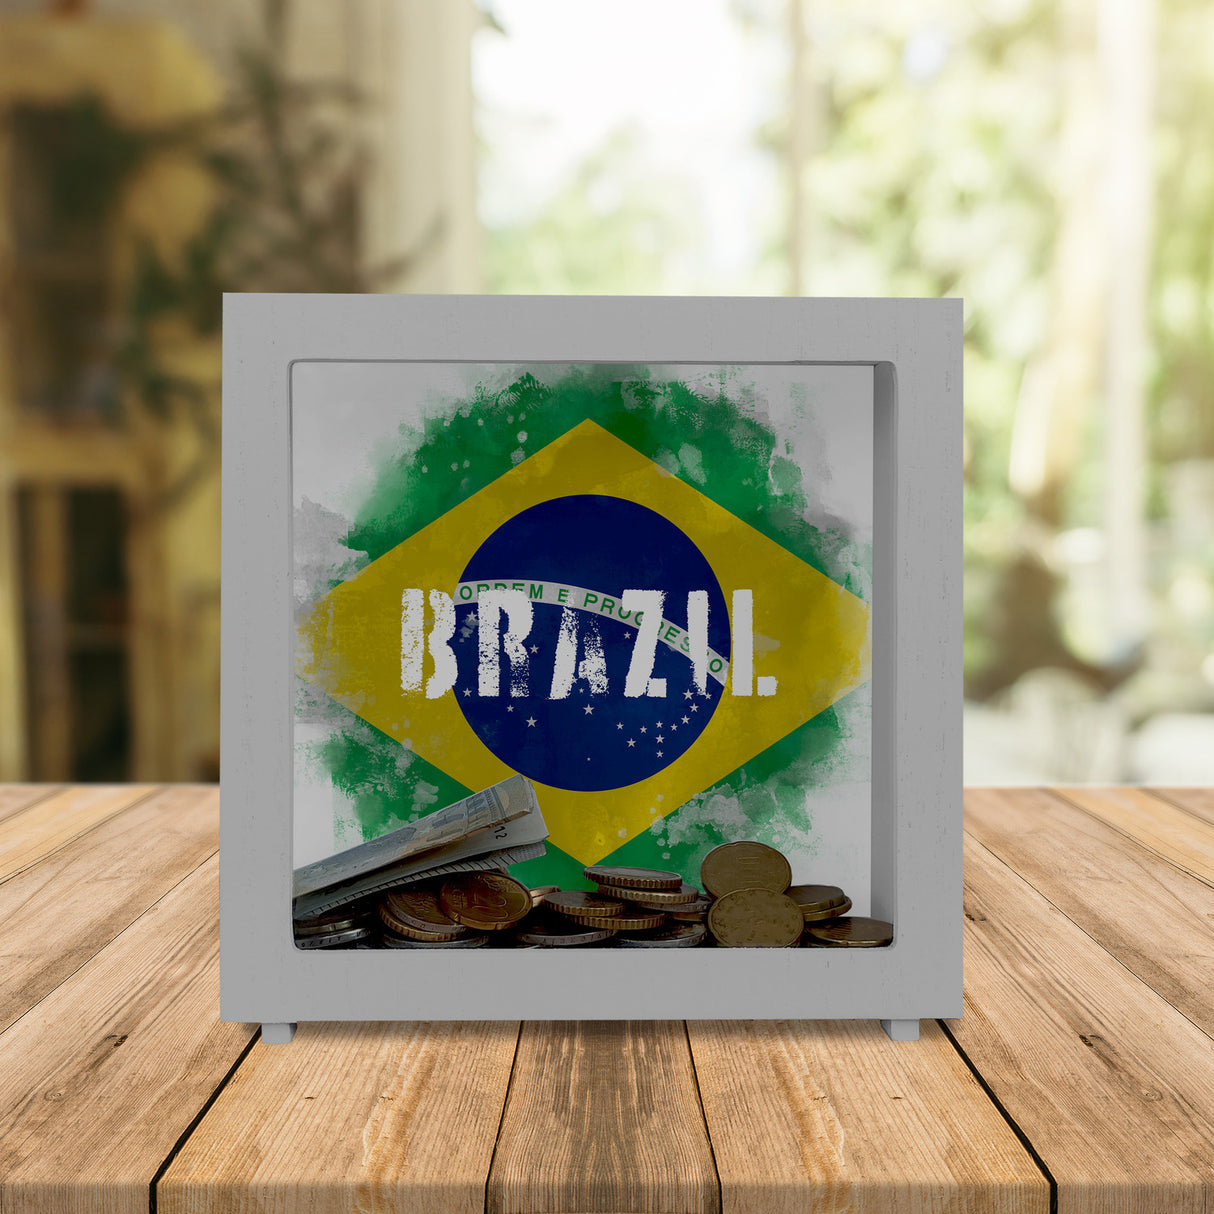 Spardose mit Brasilien-Flagge im Used Look - Sparschwein für Urlauber